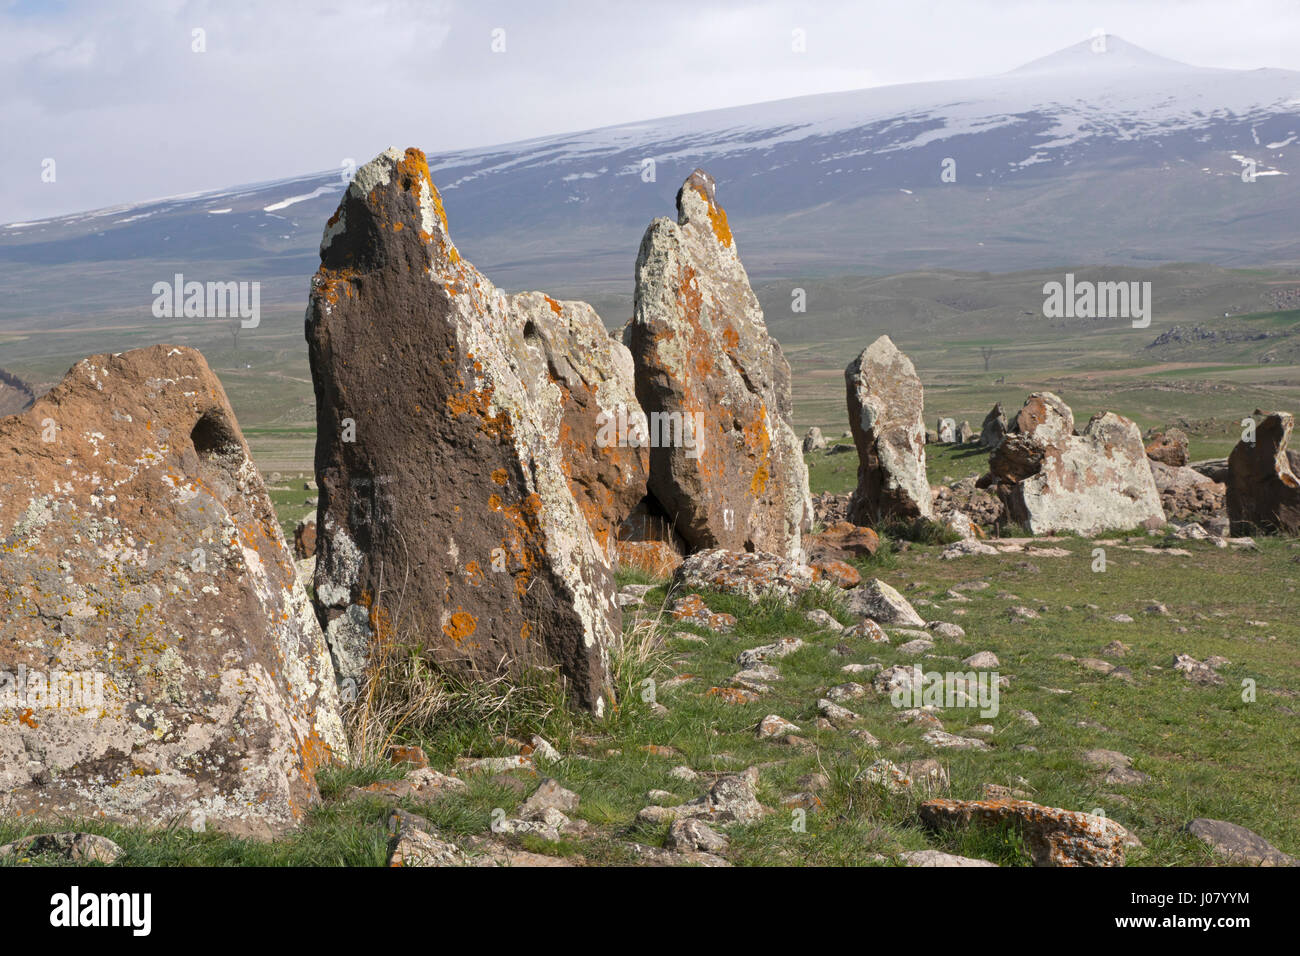 Stonehenge armenio, Carahunge Stone Circle, es año 7500 antiguo sitio megalítico para la observación astronómica. Foto de stock